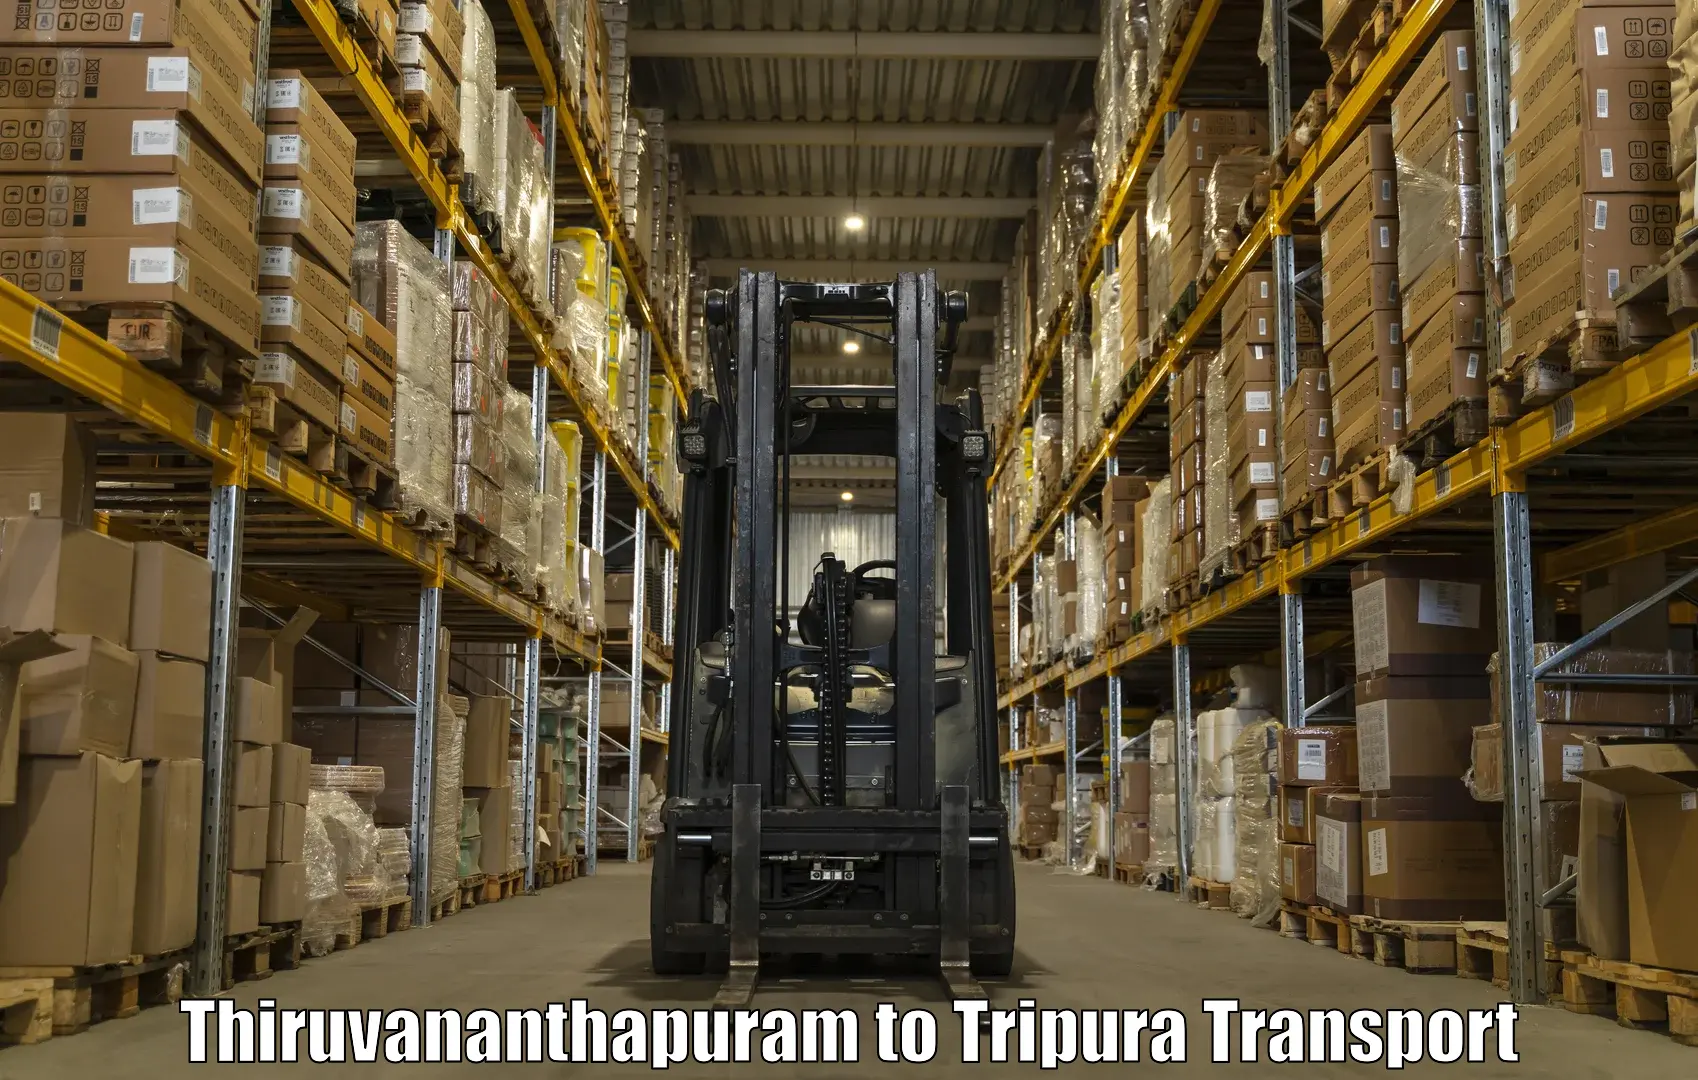 Sending bike to another city Thiruvananthapuram to Agartala